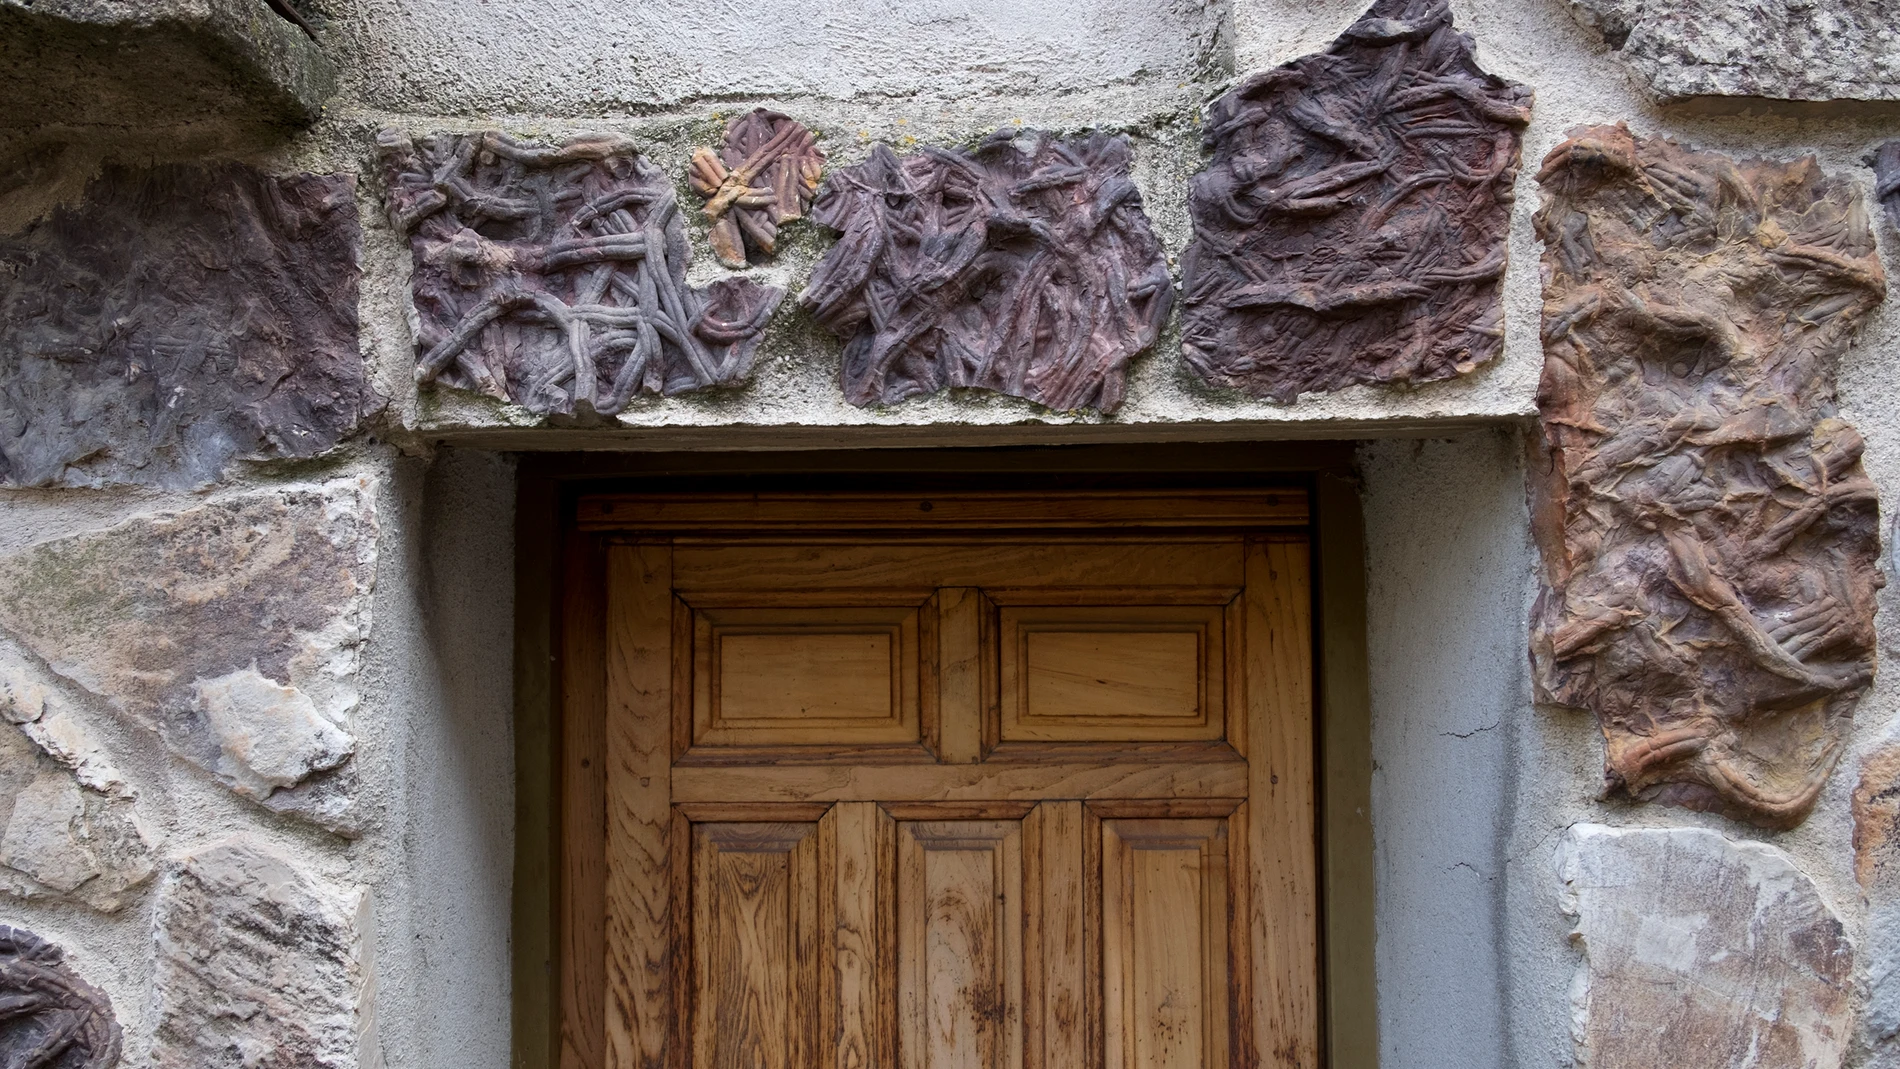 La identidad de Monsagro se relaciona con las huellas fósiles que descubrimos en las fachadas de sus casas, calles y fuentes